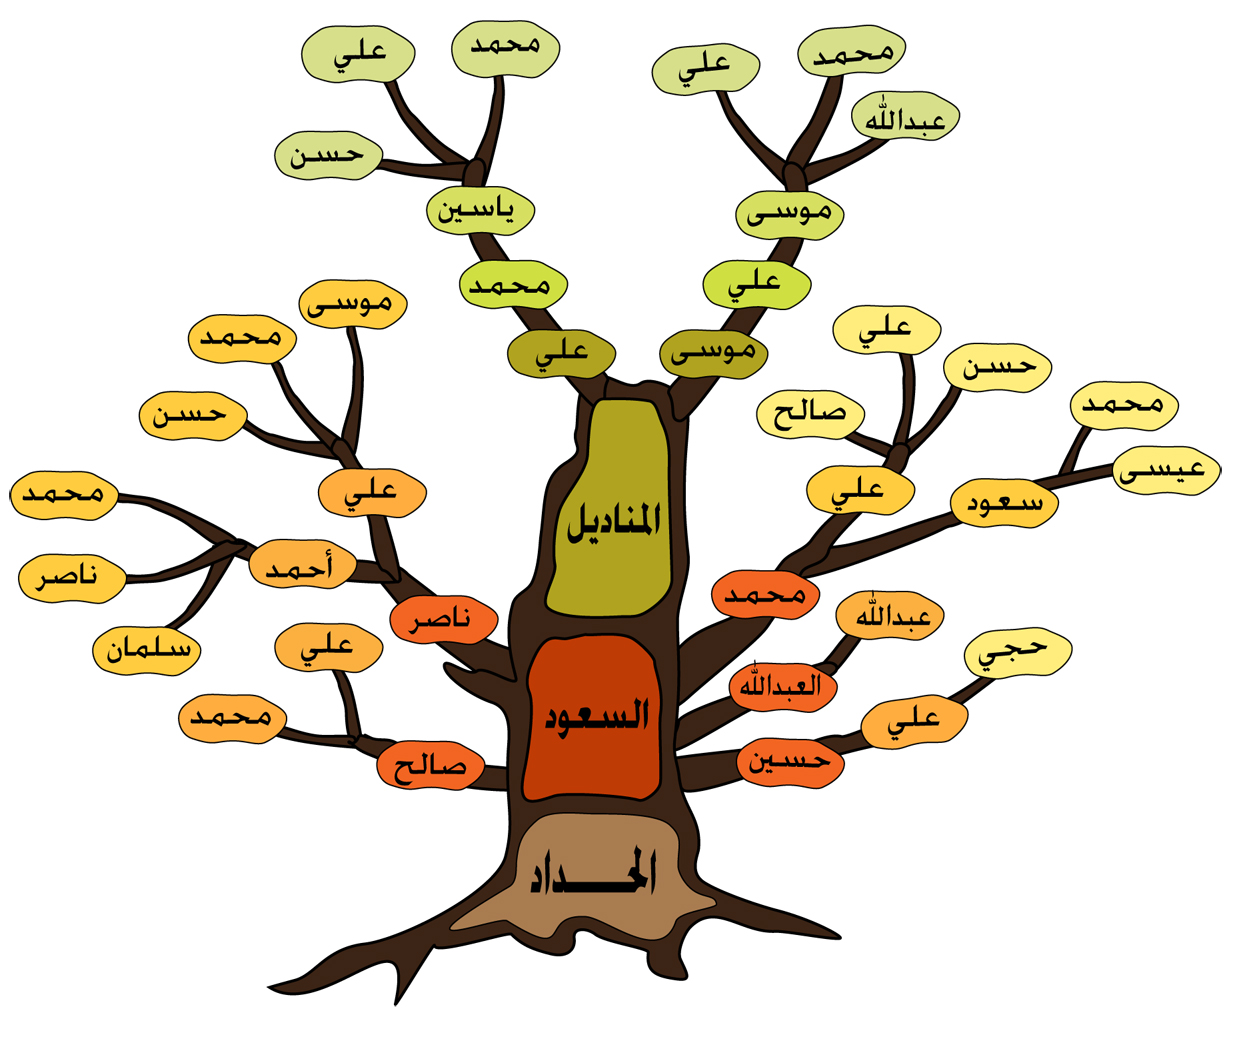 طريقة رسم شجرة العائلة , كيفية رسم شجرة العائلة صور حزينه